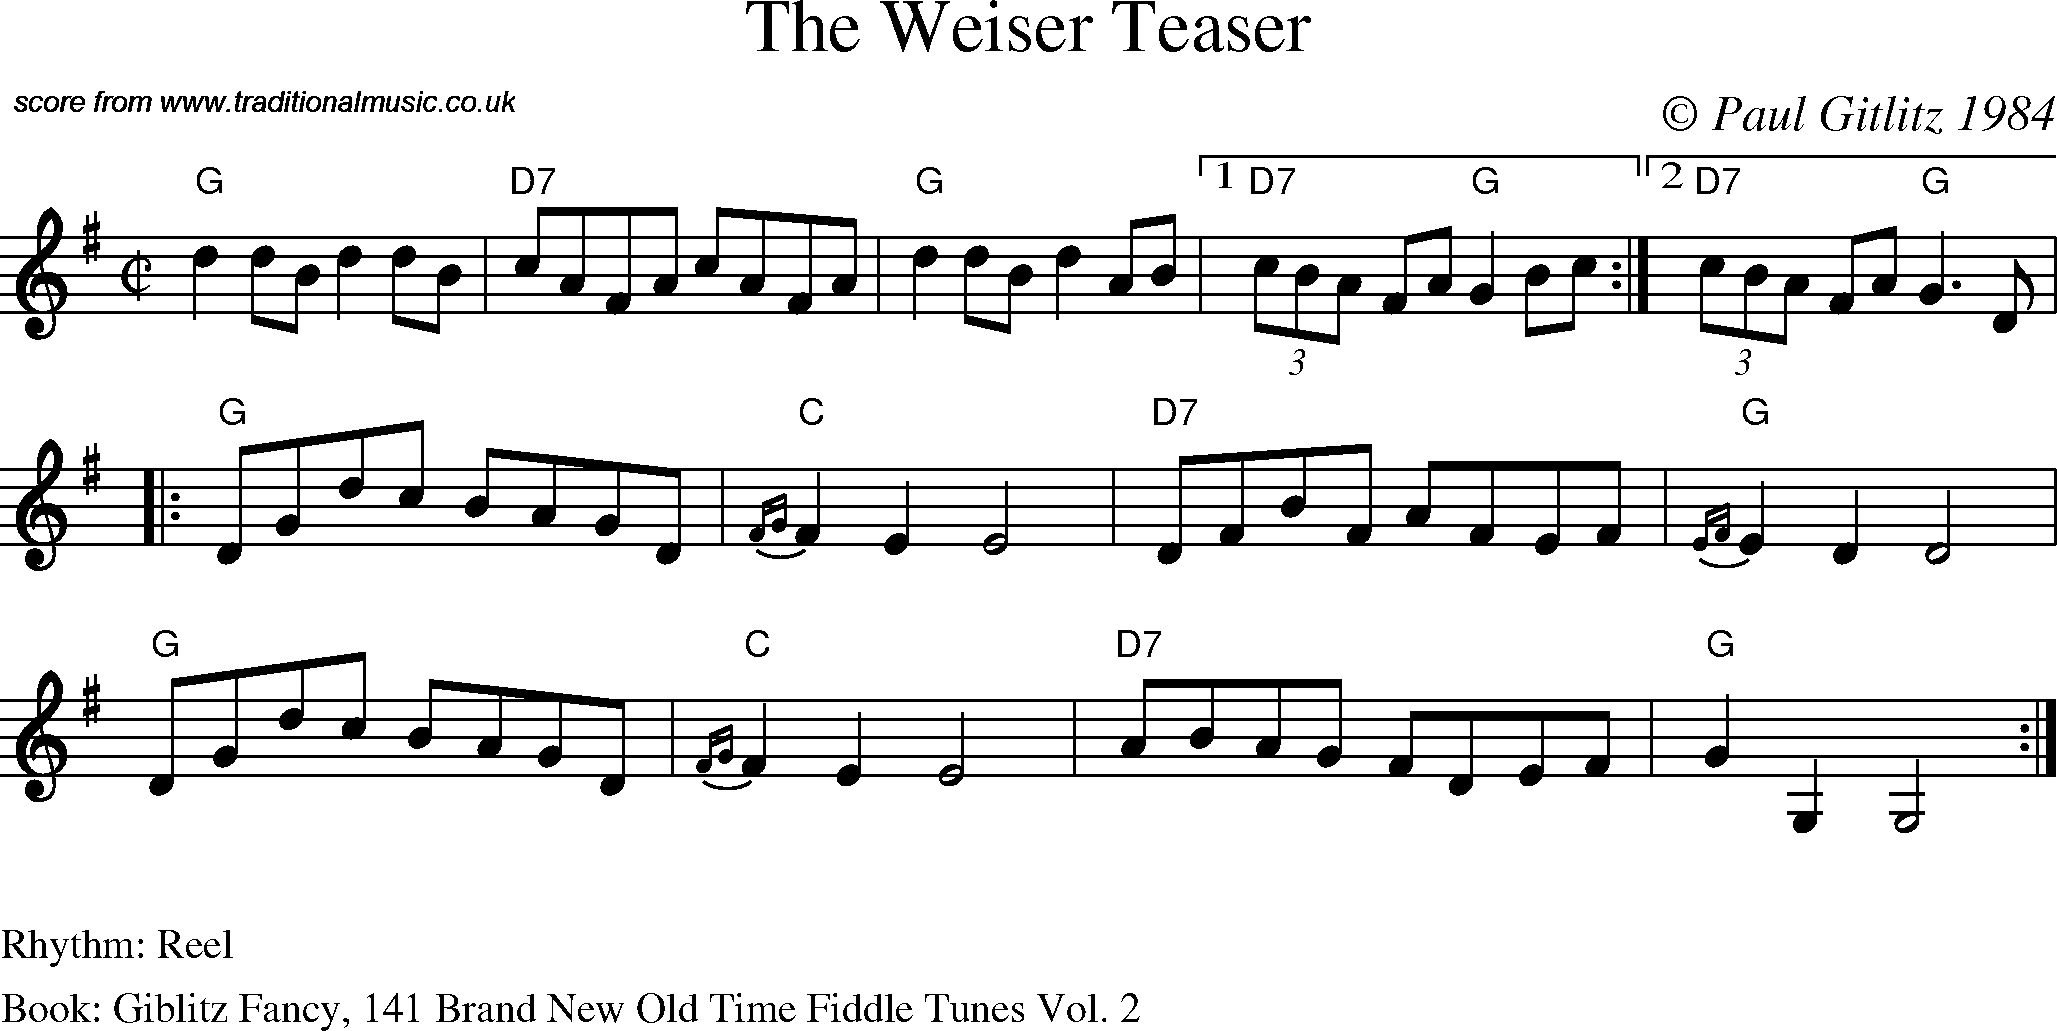 Sheet Music Score for Reel - The Weiser Teaser